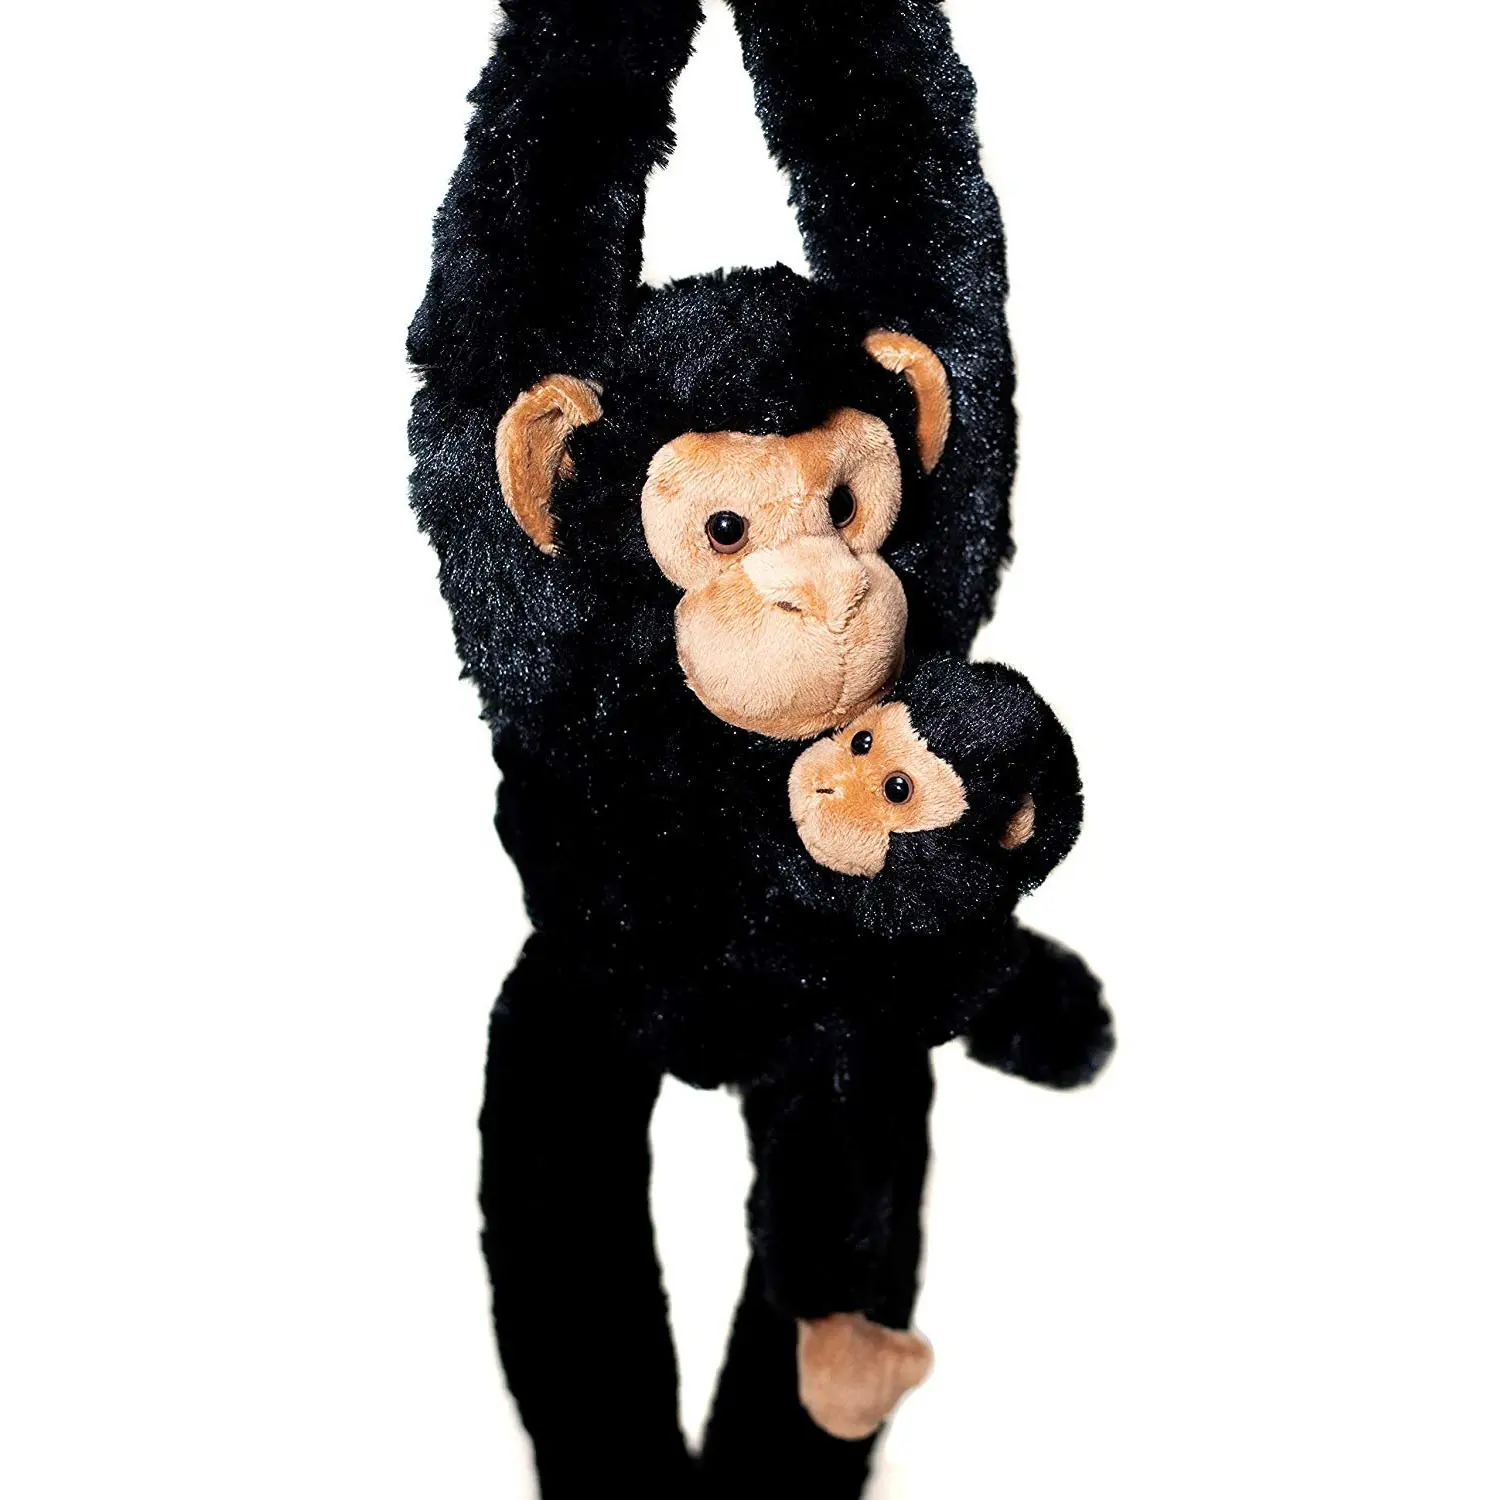 32 Inch Plush Black Hanging Monkey Stuffed Animal With Baby Monkey Toy with Ultra Soft Plush Soft toy Monkey Plush